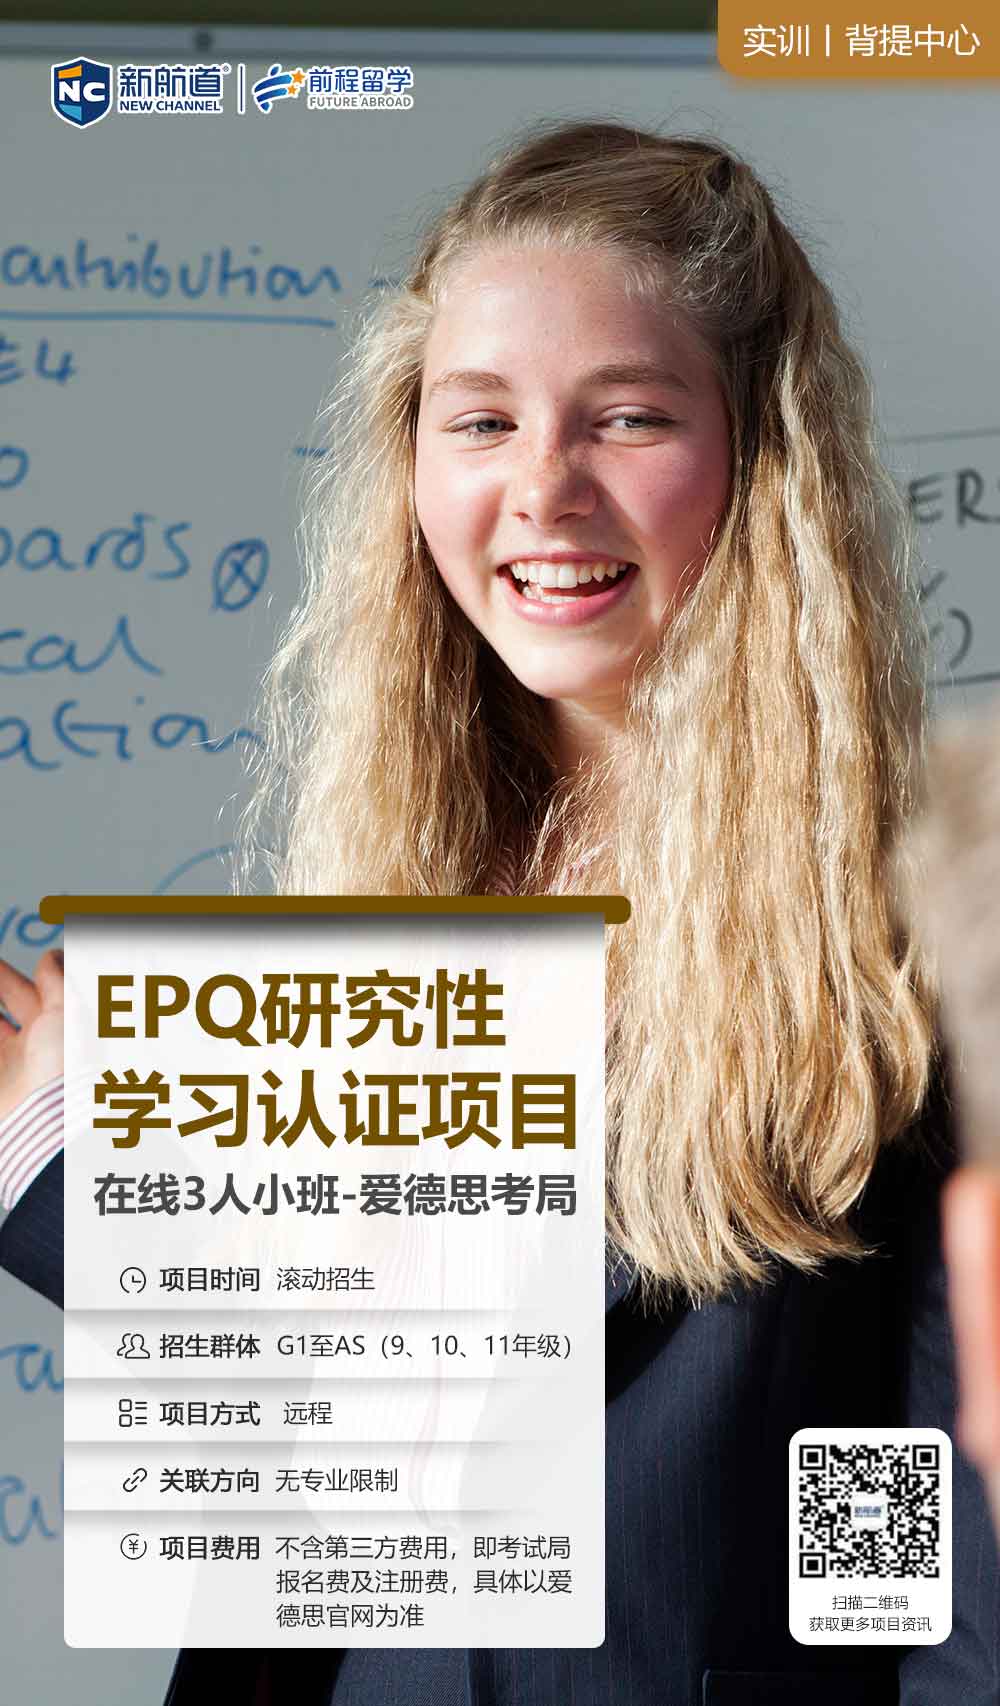 新航道背提：EPQ研究性学习认证项目